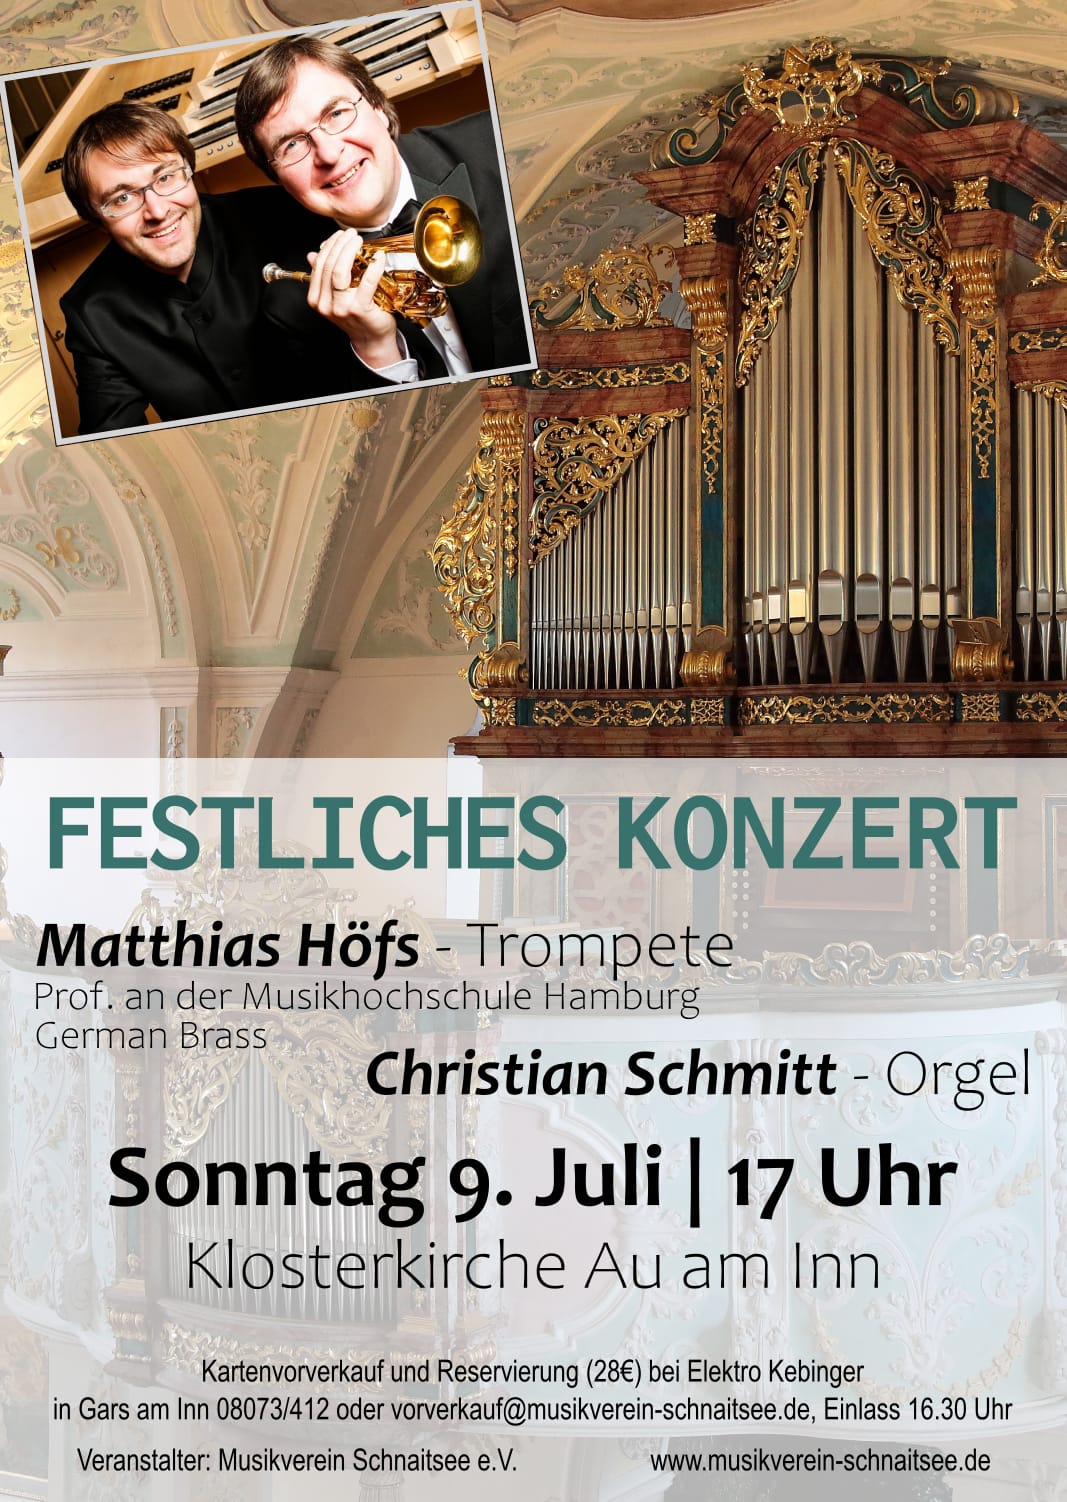 Featured image for “Festliches Konzert”